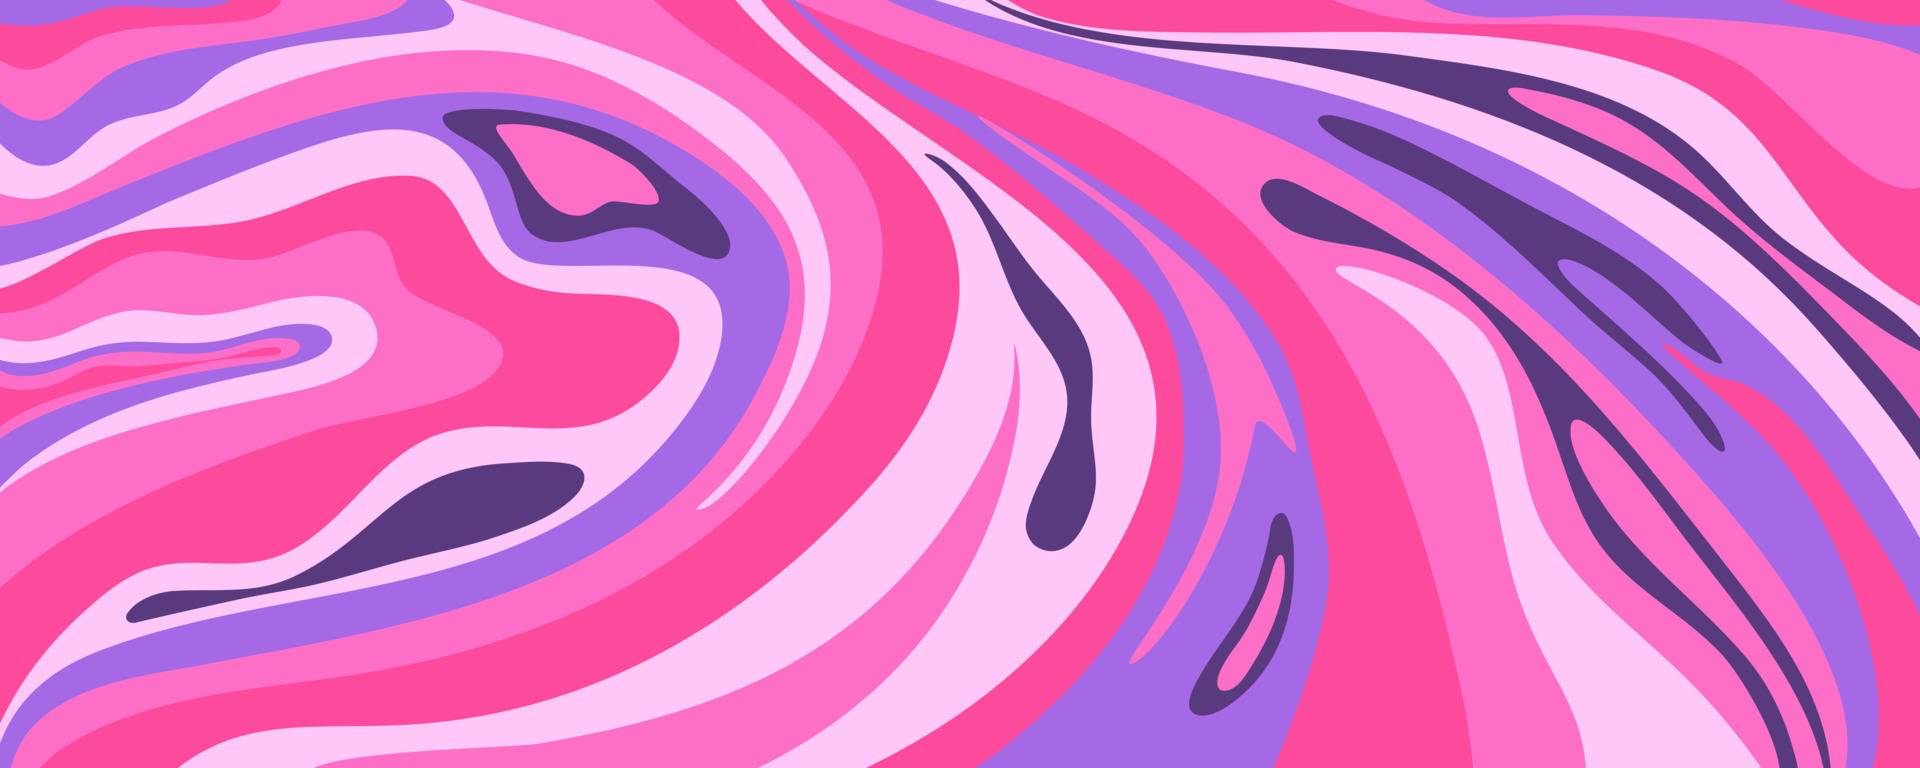 Hình nền sóng Y2K với chất lỏng hoa văn màu hồng sẽ khiến bạn phát cuồng. Nhấp chuột vào hình ảnh để tìm hiểu cách sử dụng hình nền này để tạo ra một không gian có phong cách hoài cổ và đầy màu sắc.